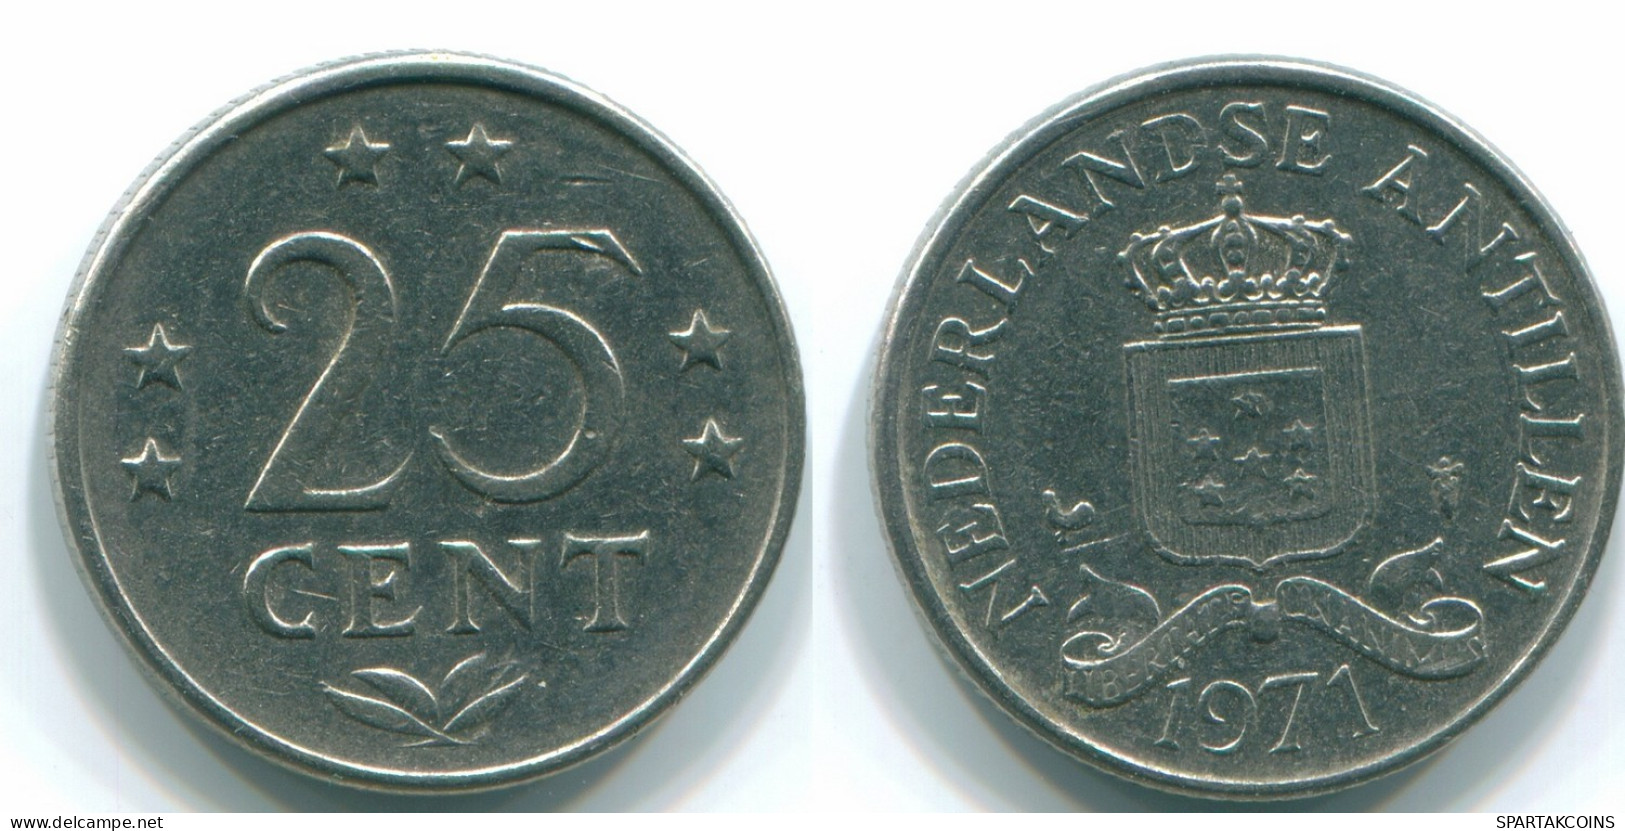 25 CENTS 1971 NETHERLANDS ANTILLES Nickel Colonial Coin #S11548.U.A - Niederländische Antillen